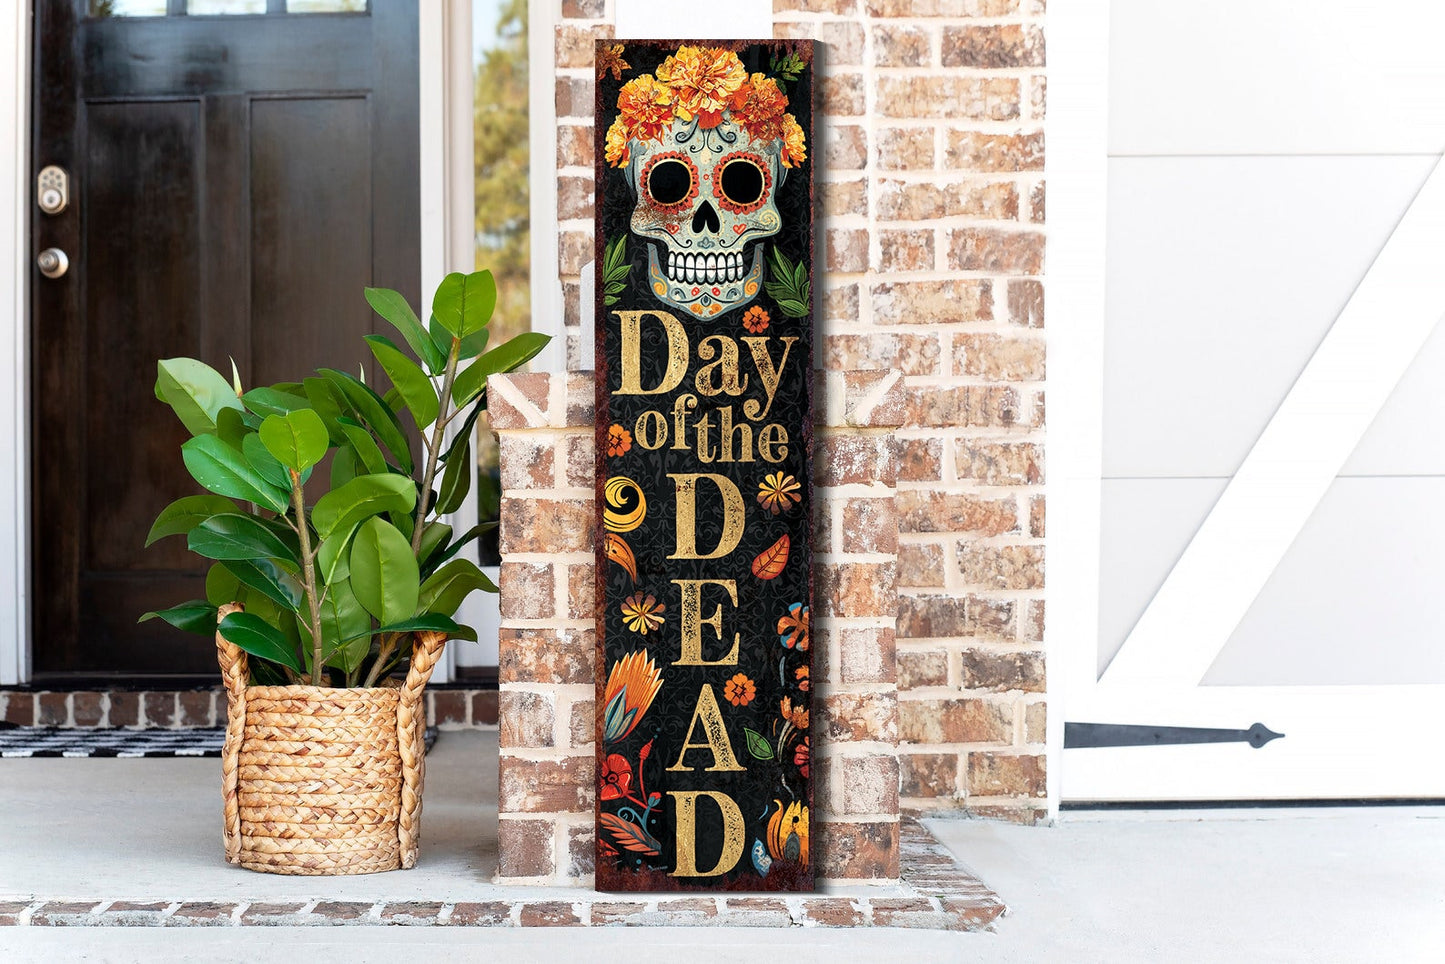 36in Day of the Dead Sugar Skull Porch Sign - Dia De Los Muertos Front Porch Sign, Rustic Modern Farmhouse Entryway Decor